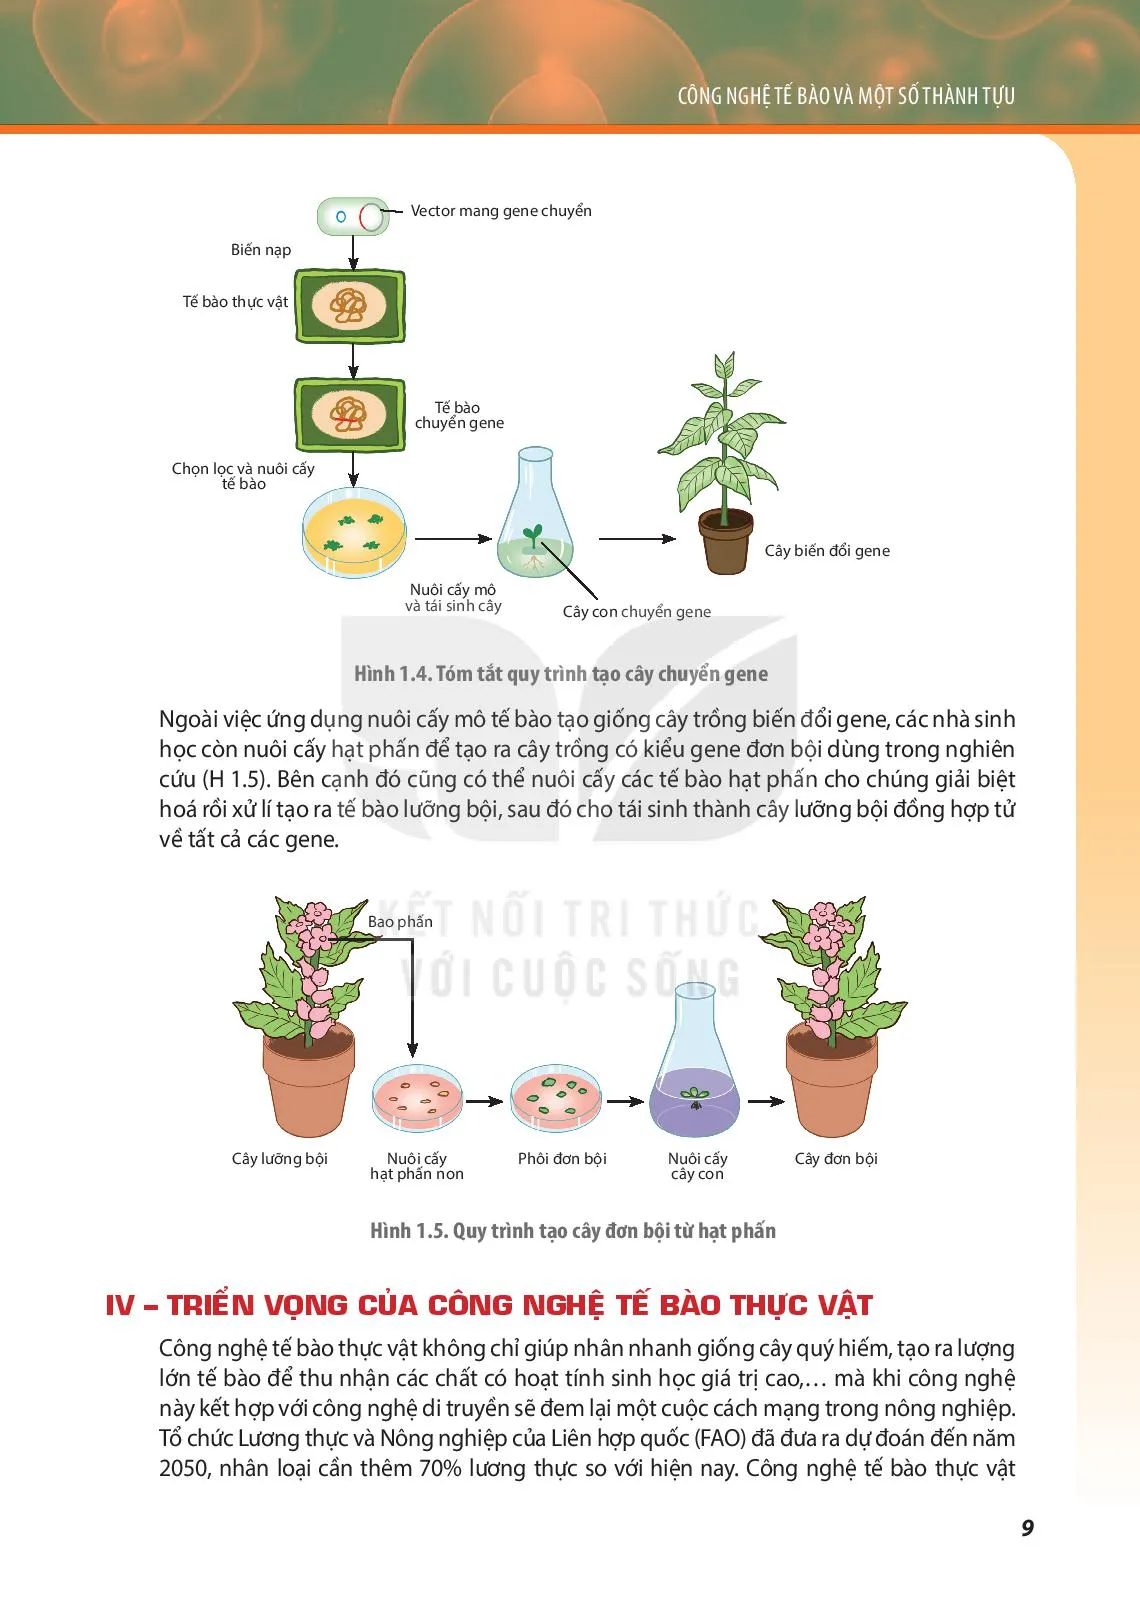 Bài 1. Công nghệ tế bào thực vật và thành tựu